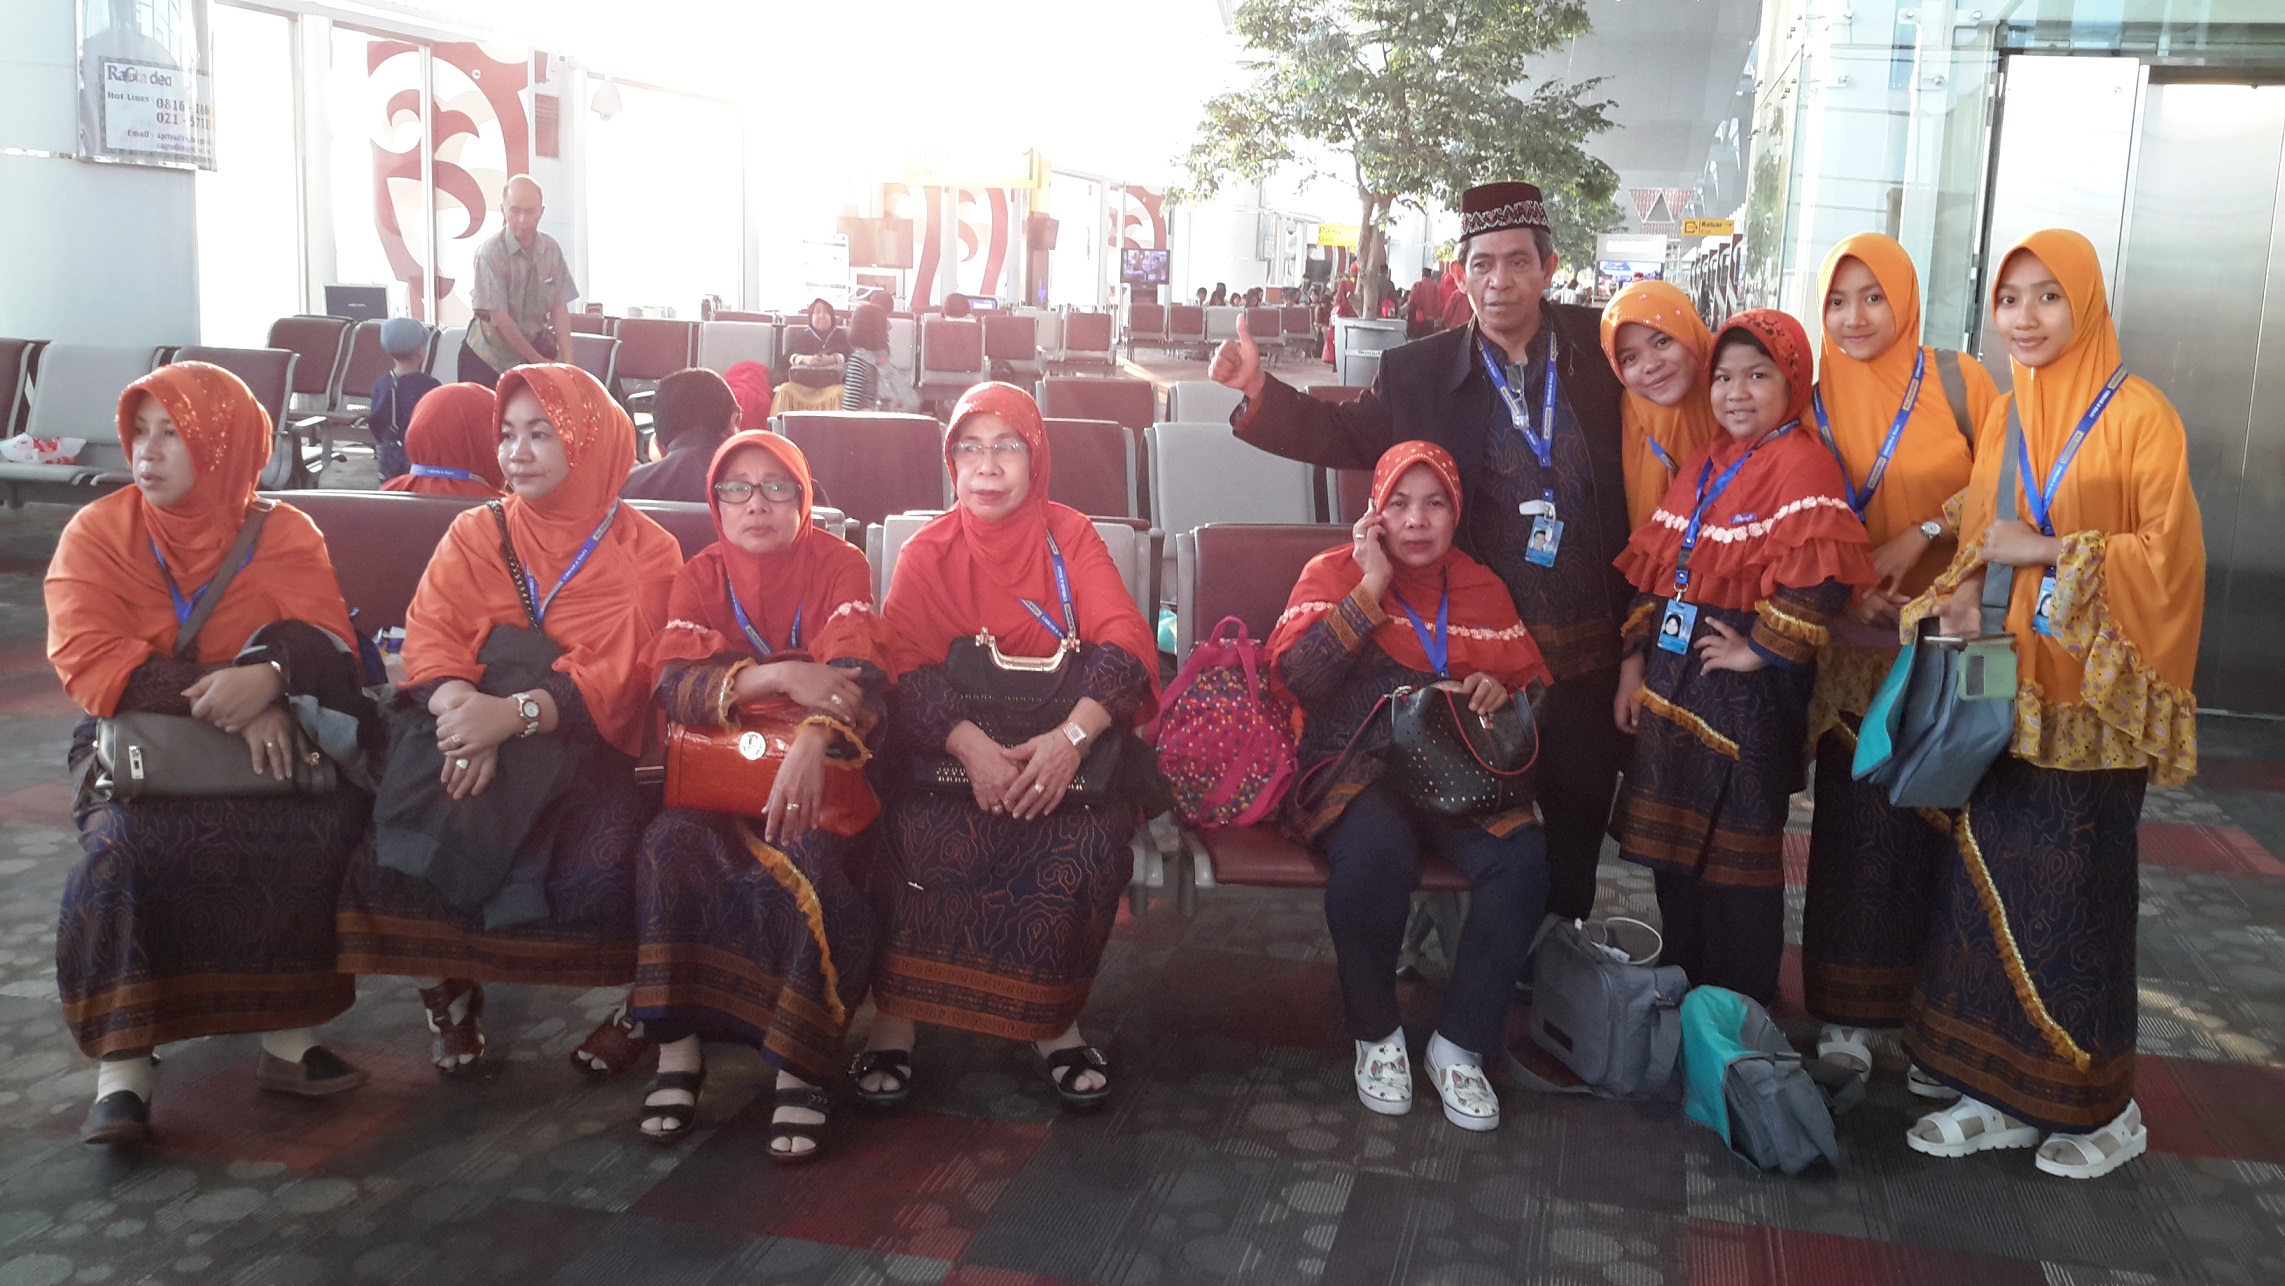 Bersama sebagian anggota keluarga yang berangkat umrah, berpose saat transit di Bandara Kualanamu, Medan (dok Nur Terbit)